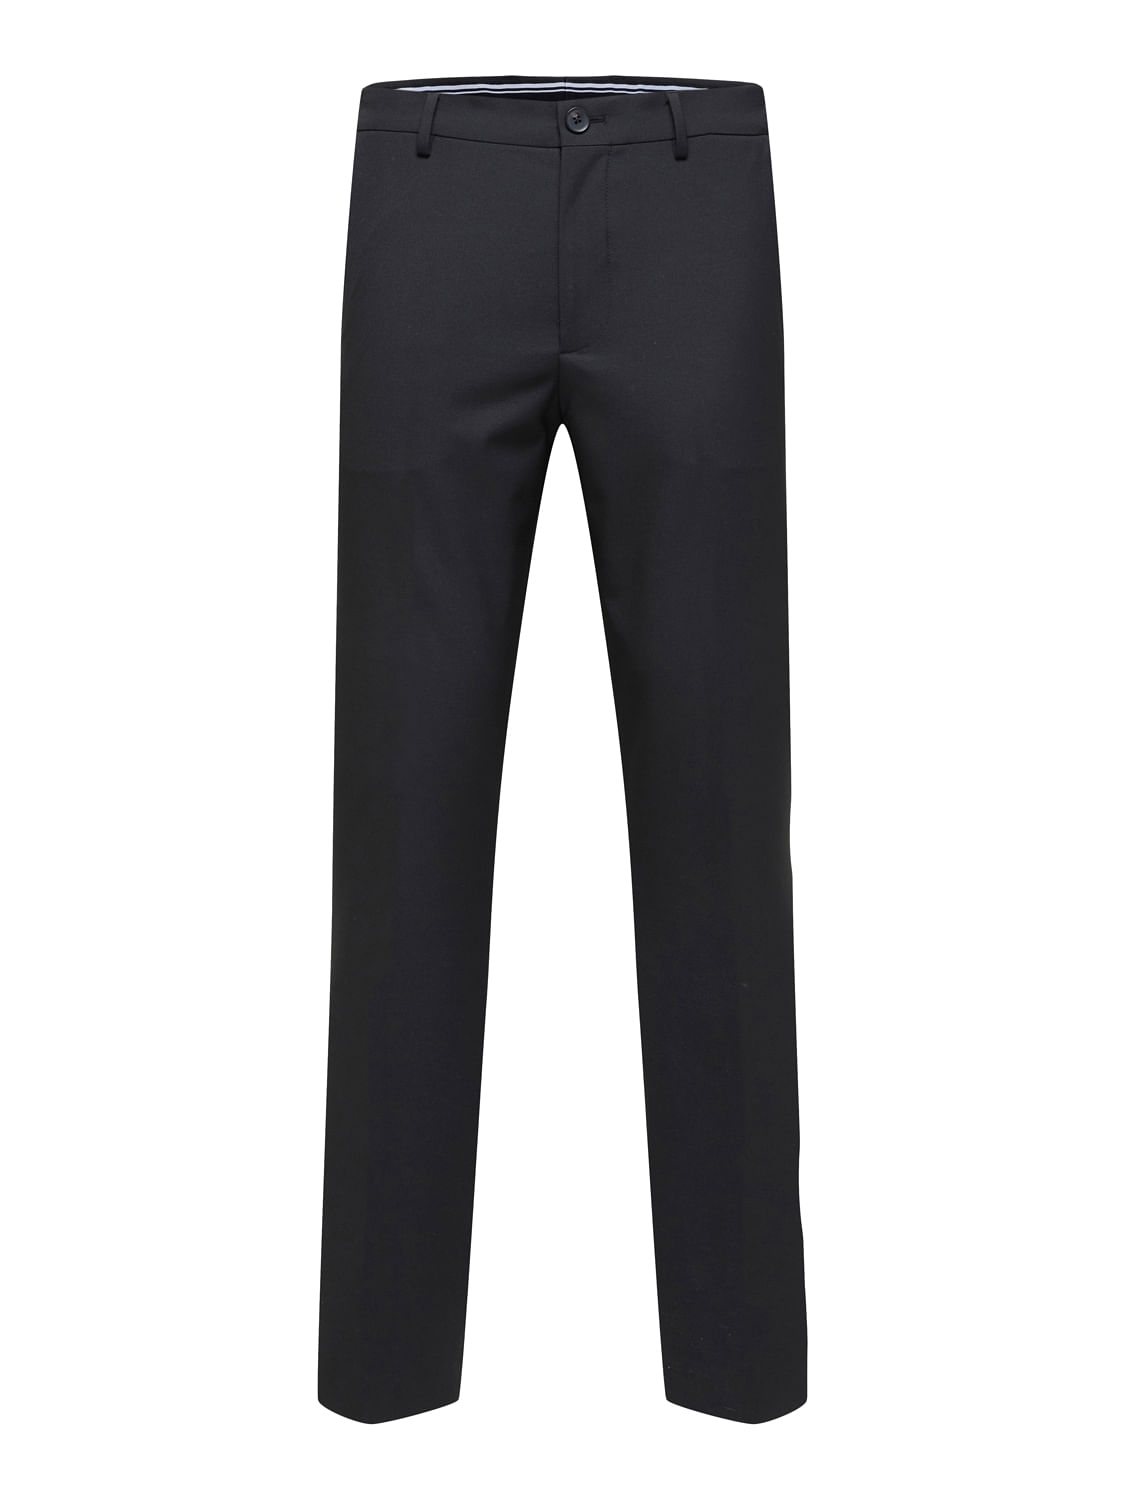 Burberry Men's Black Dress Pants | ShopStyle